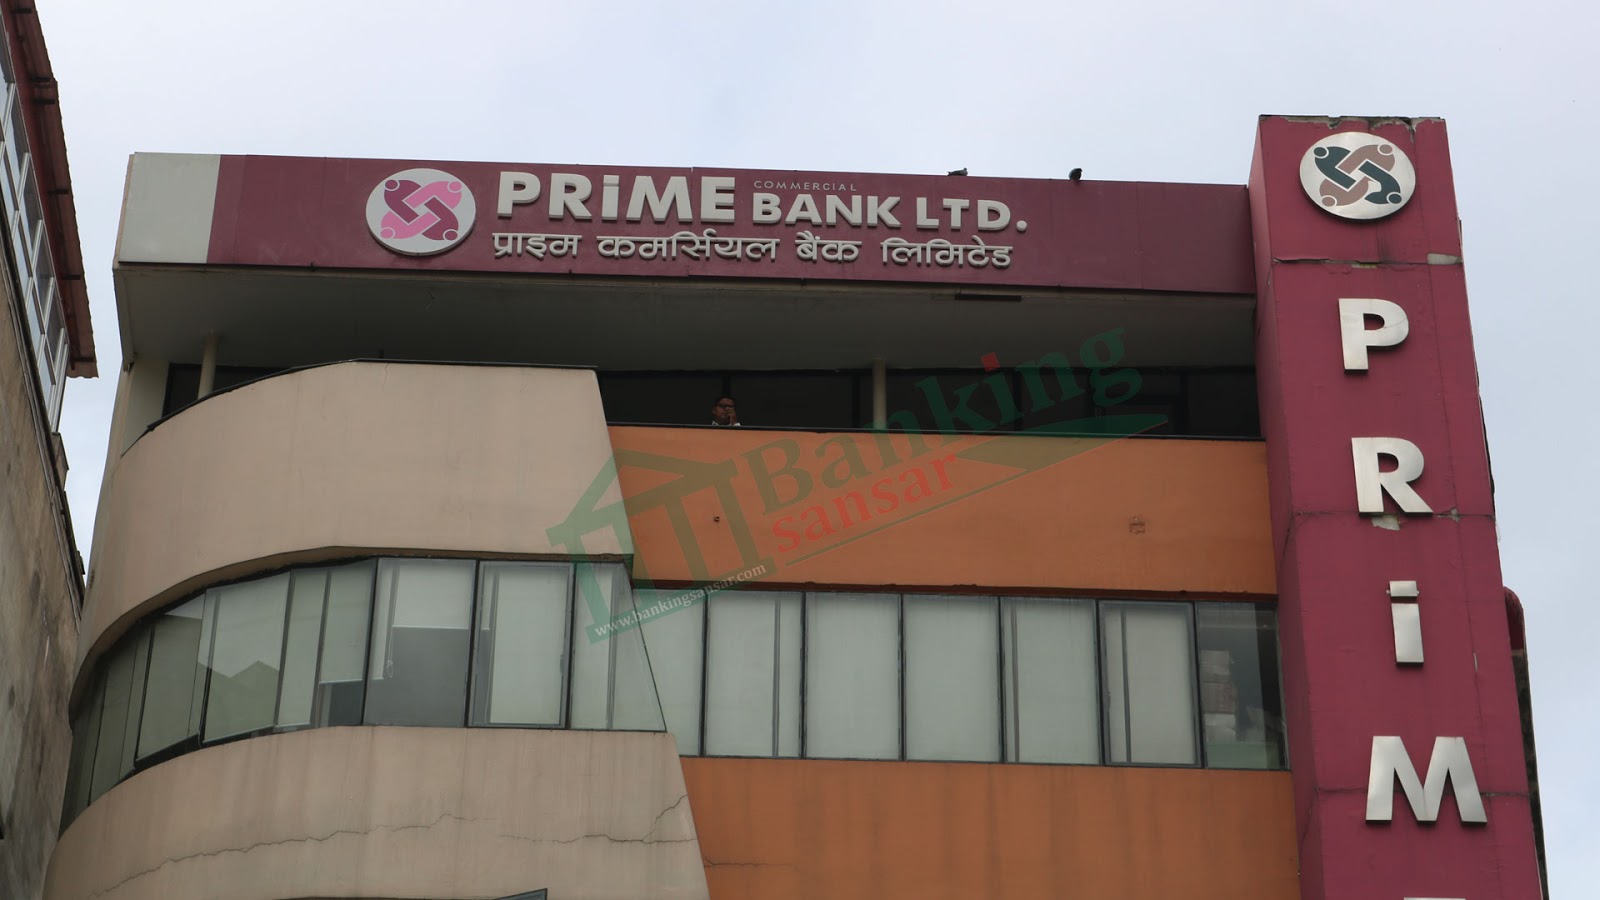  Prime Bank